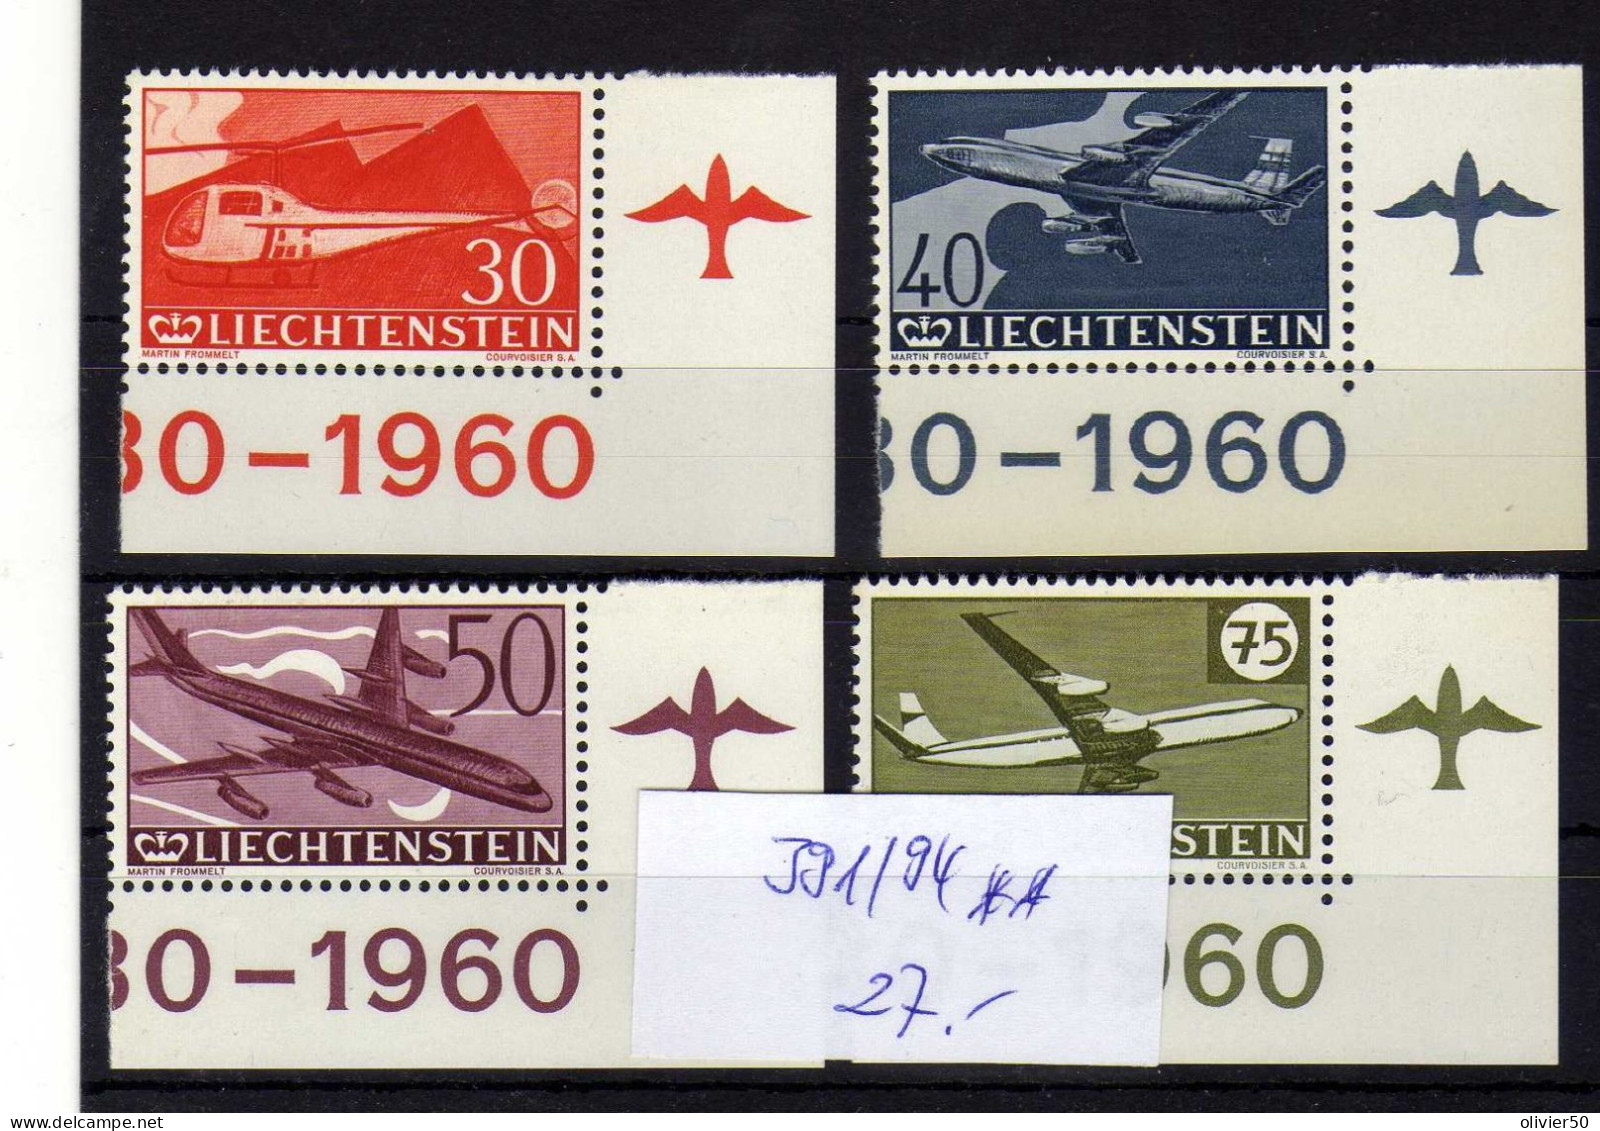 Liechtenstein (1960) - 30e Anniversaire Du Timbre Aerien -  Neufs** - MNH - Air Post